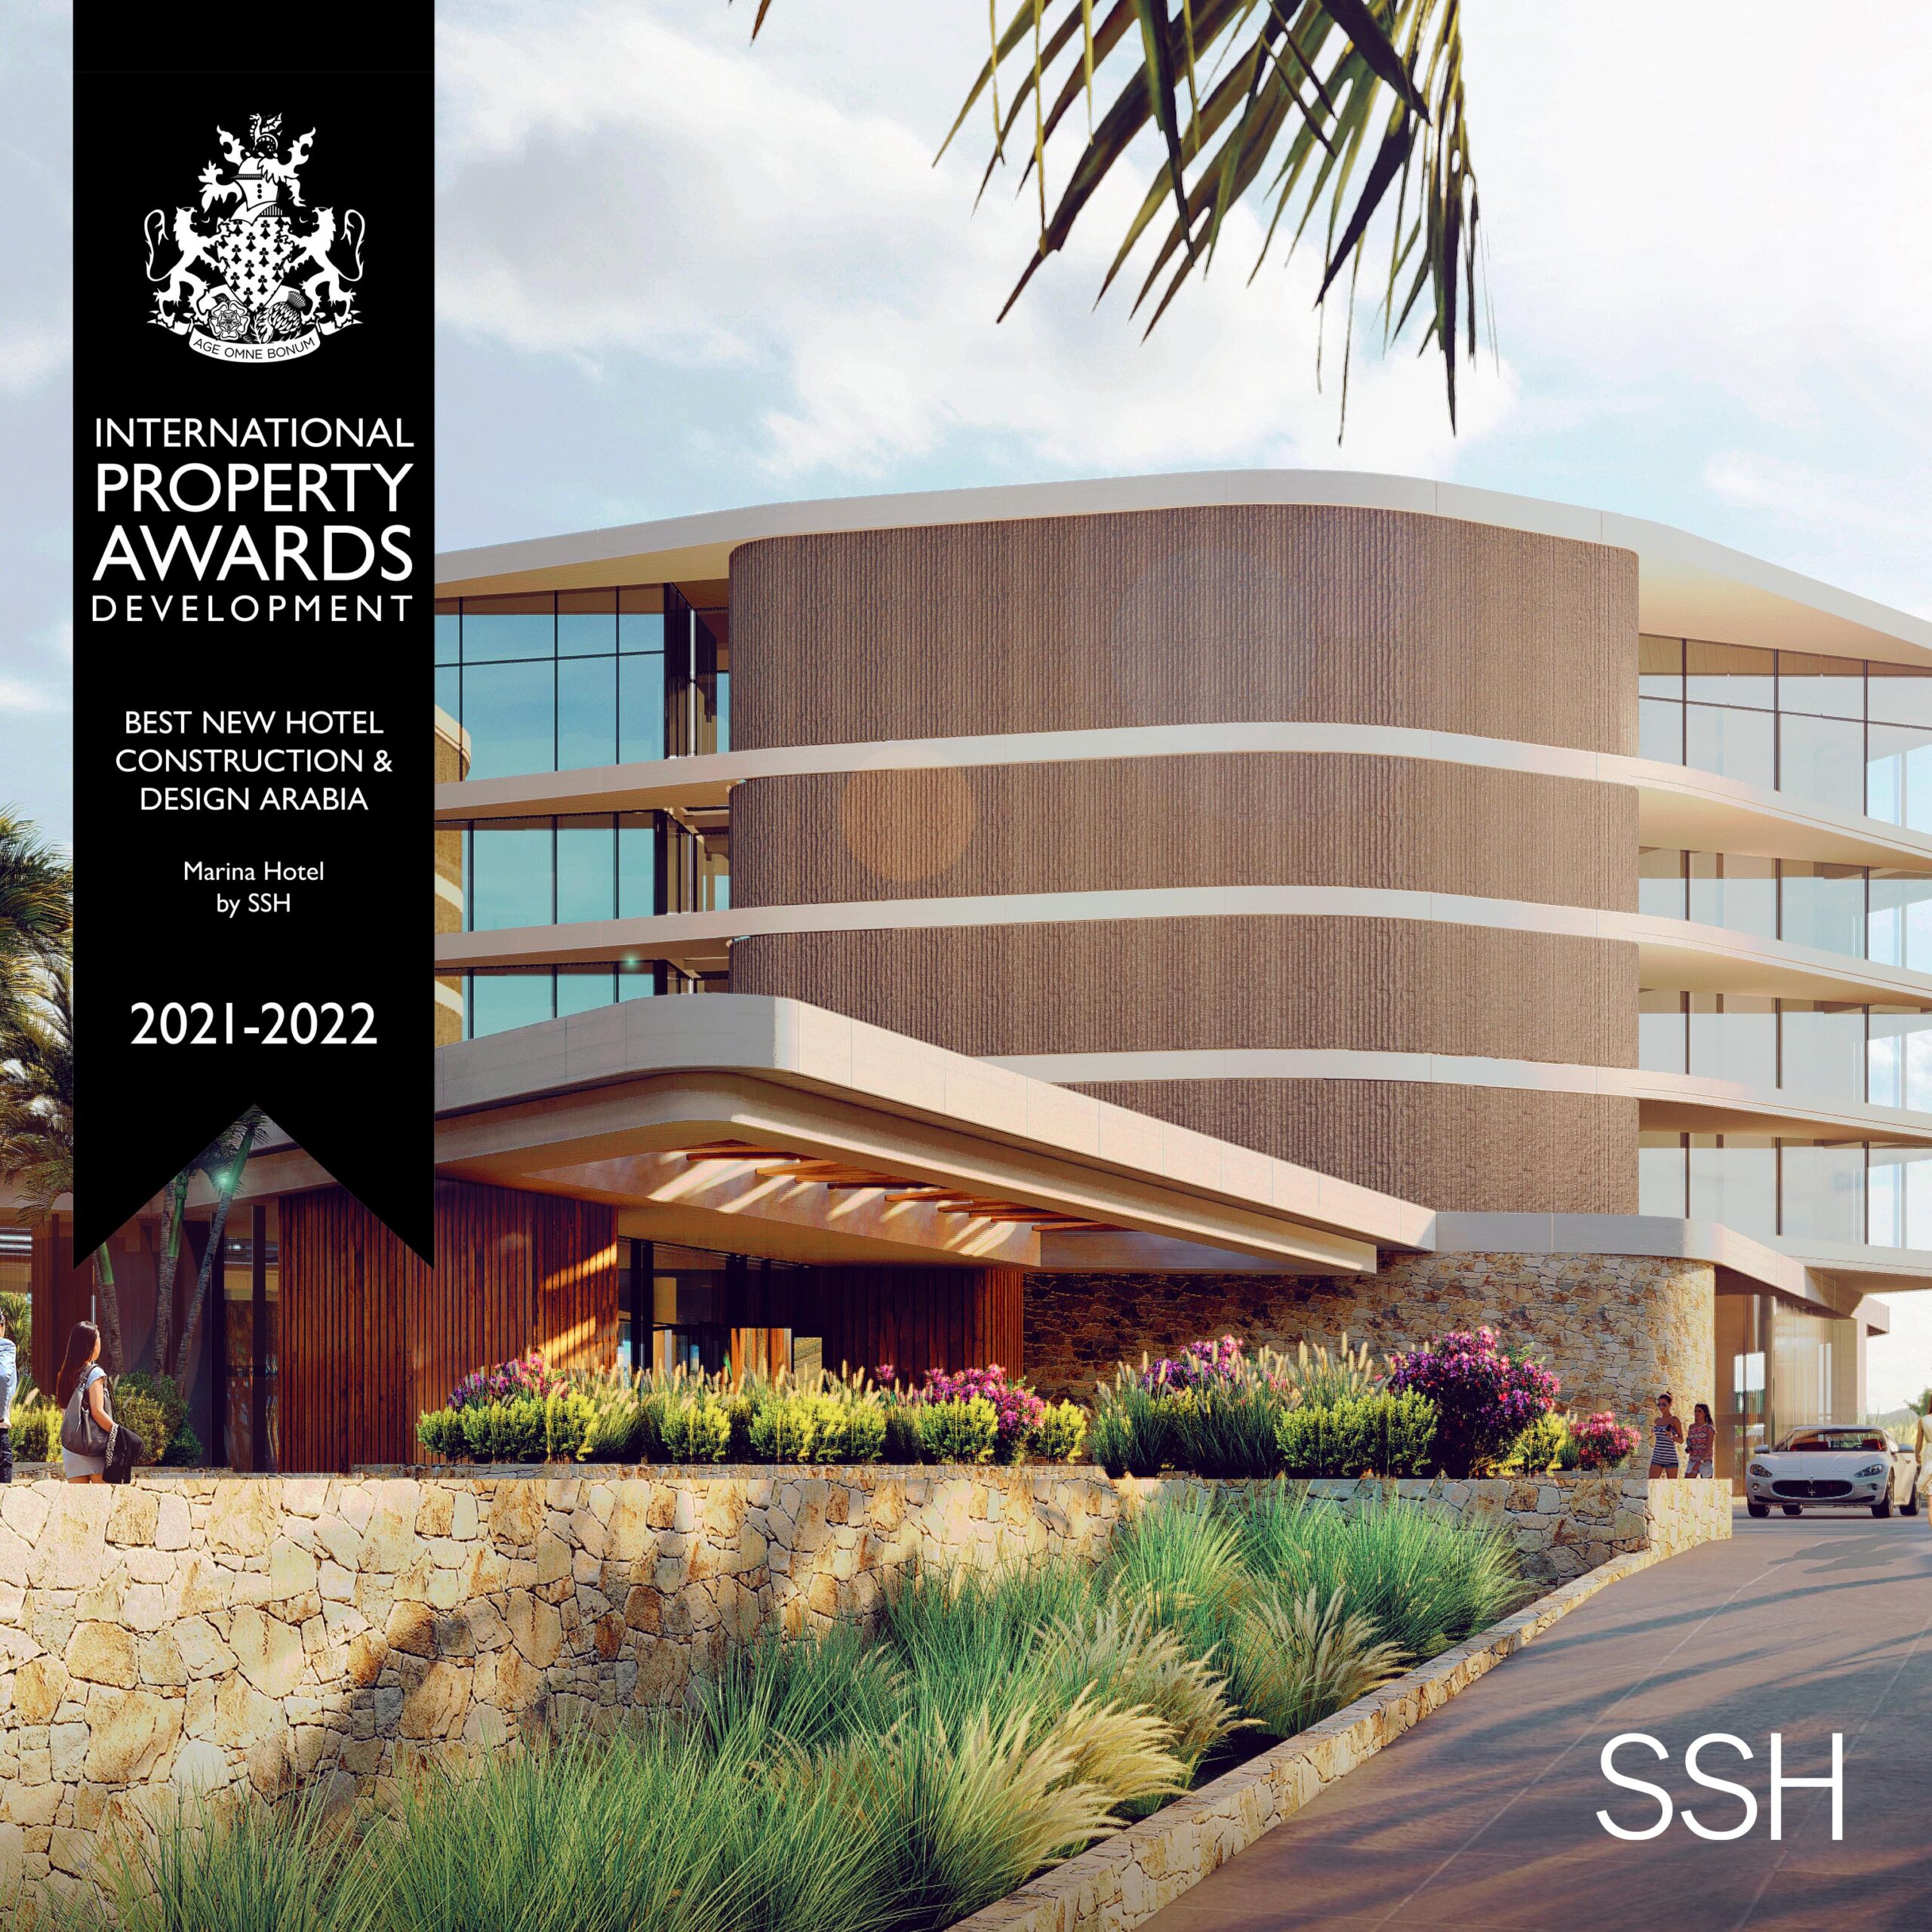 5-Star Marina Resort in Muscat Regional Winner at International Property Awards